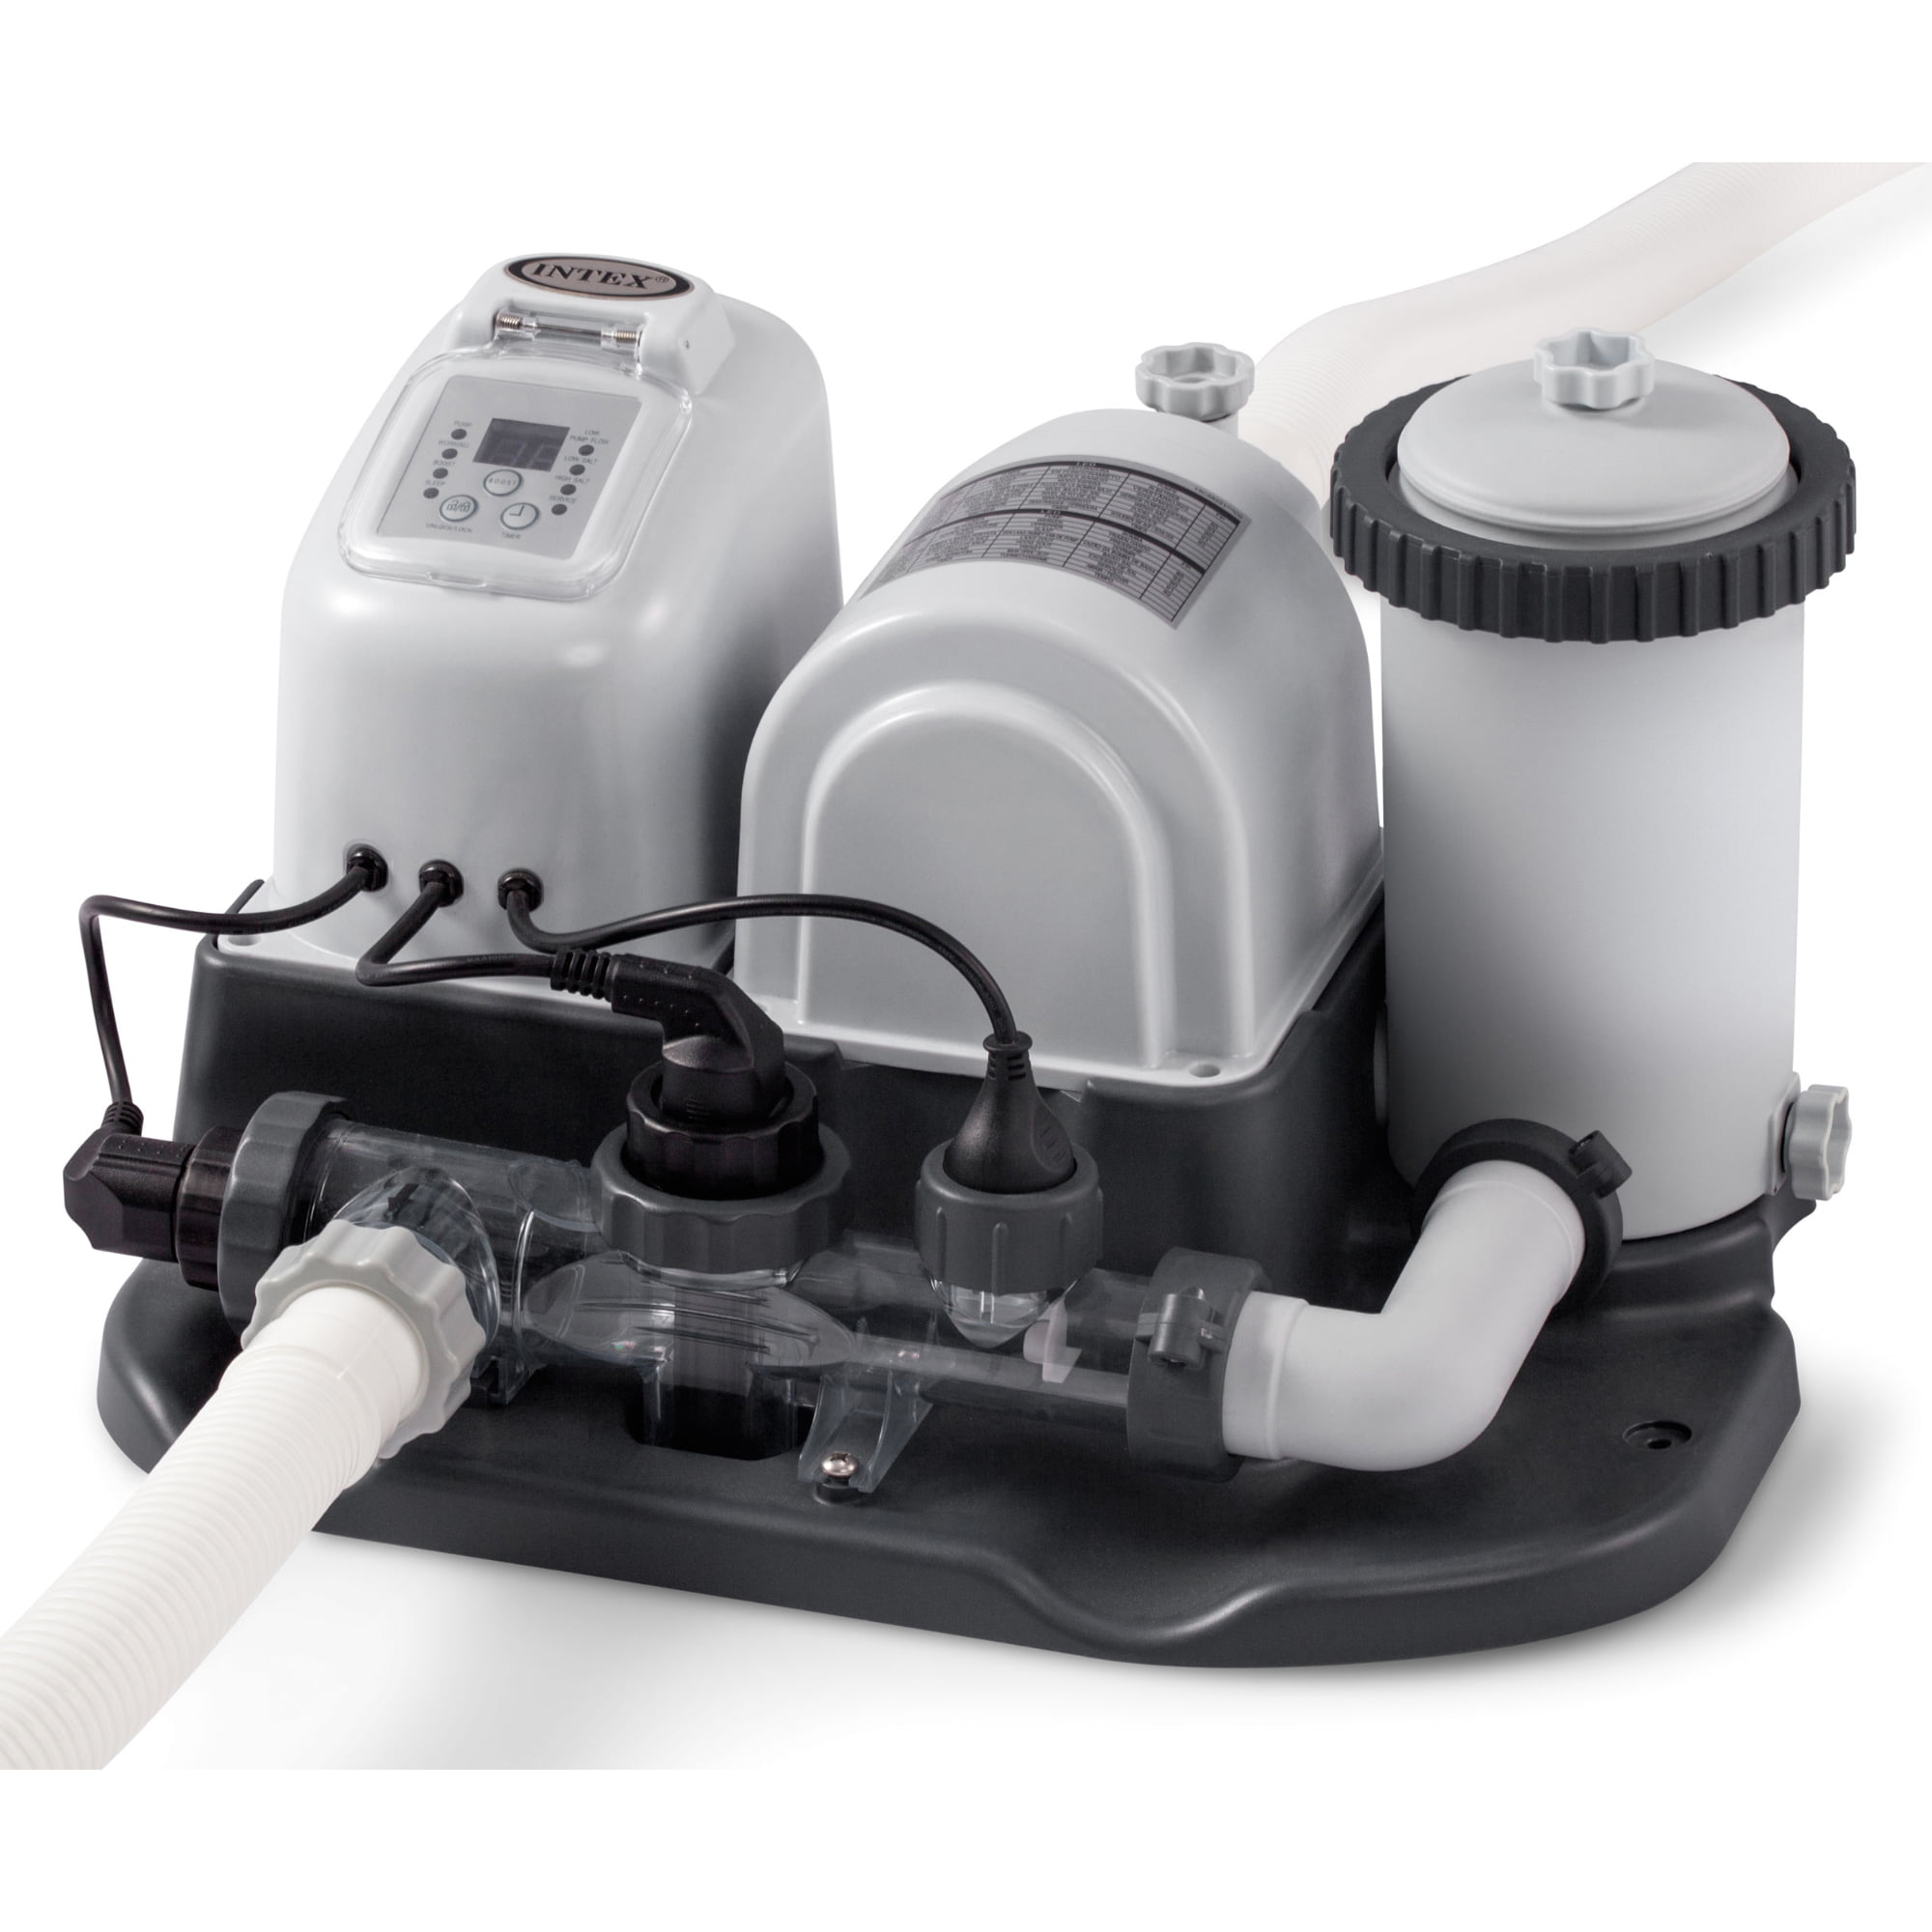 Udveksle Prædiken ventilator Intex - 120V Cartridge Filter Pump and Saltwater System - Walmart.com